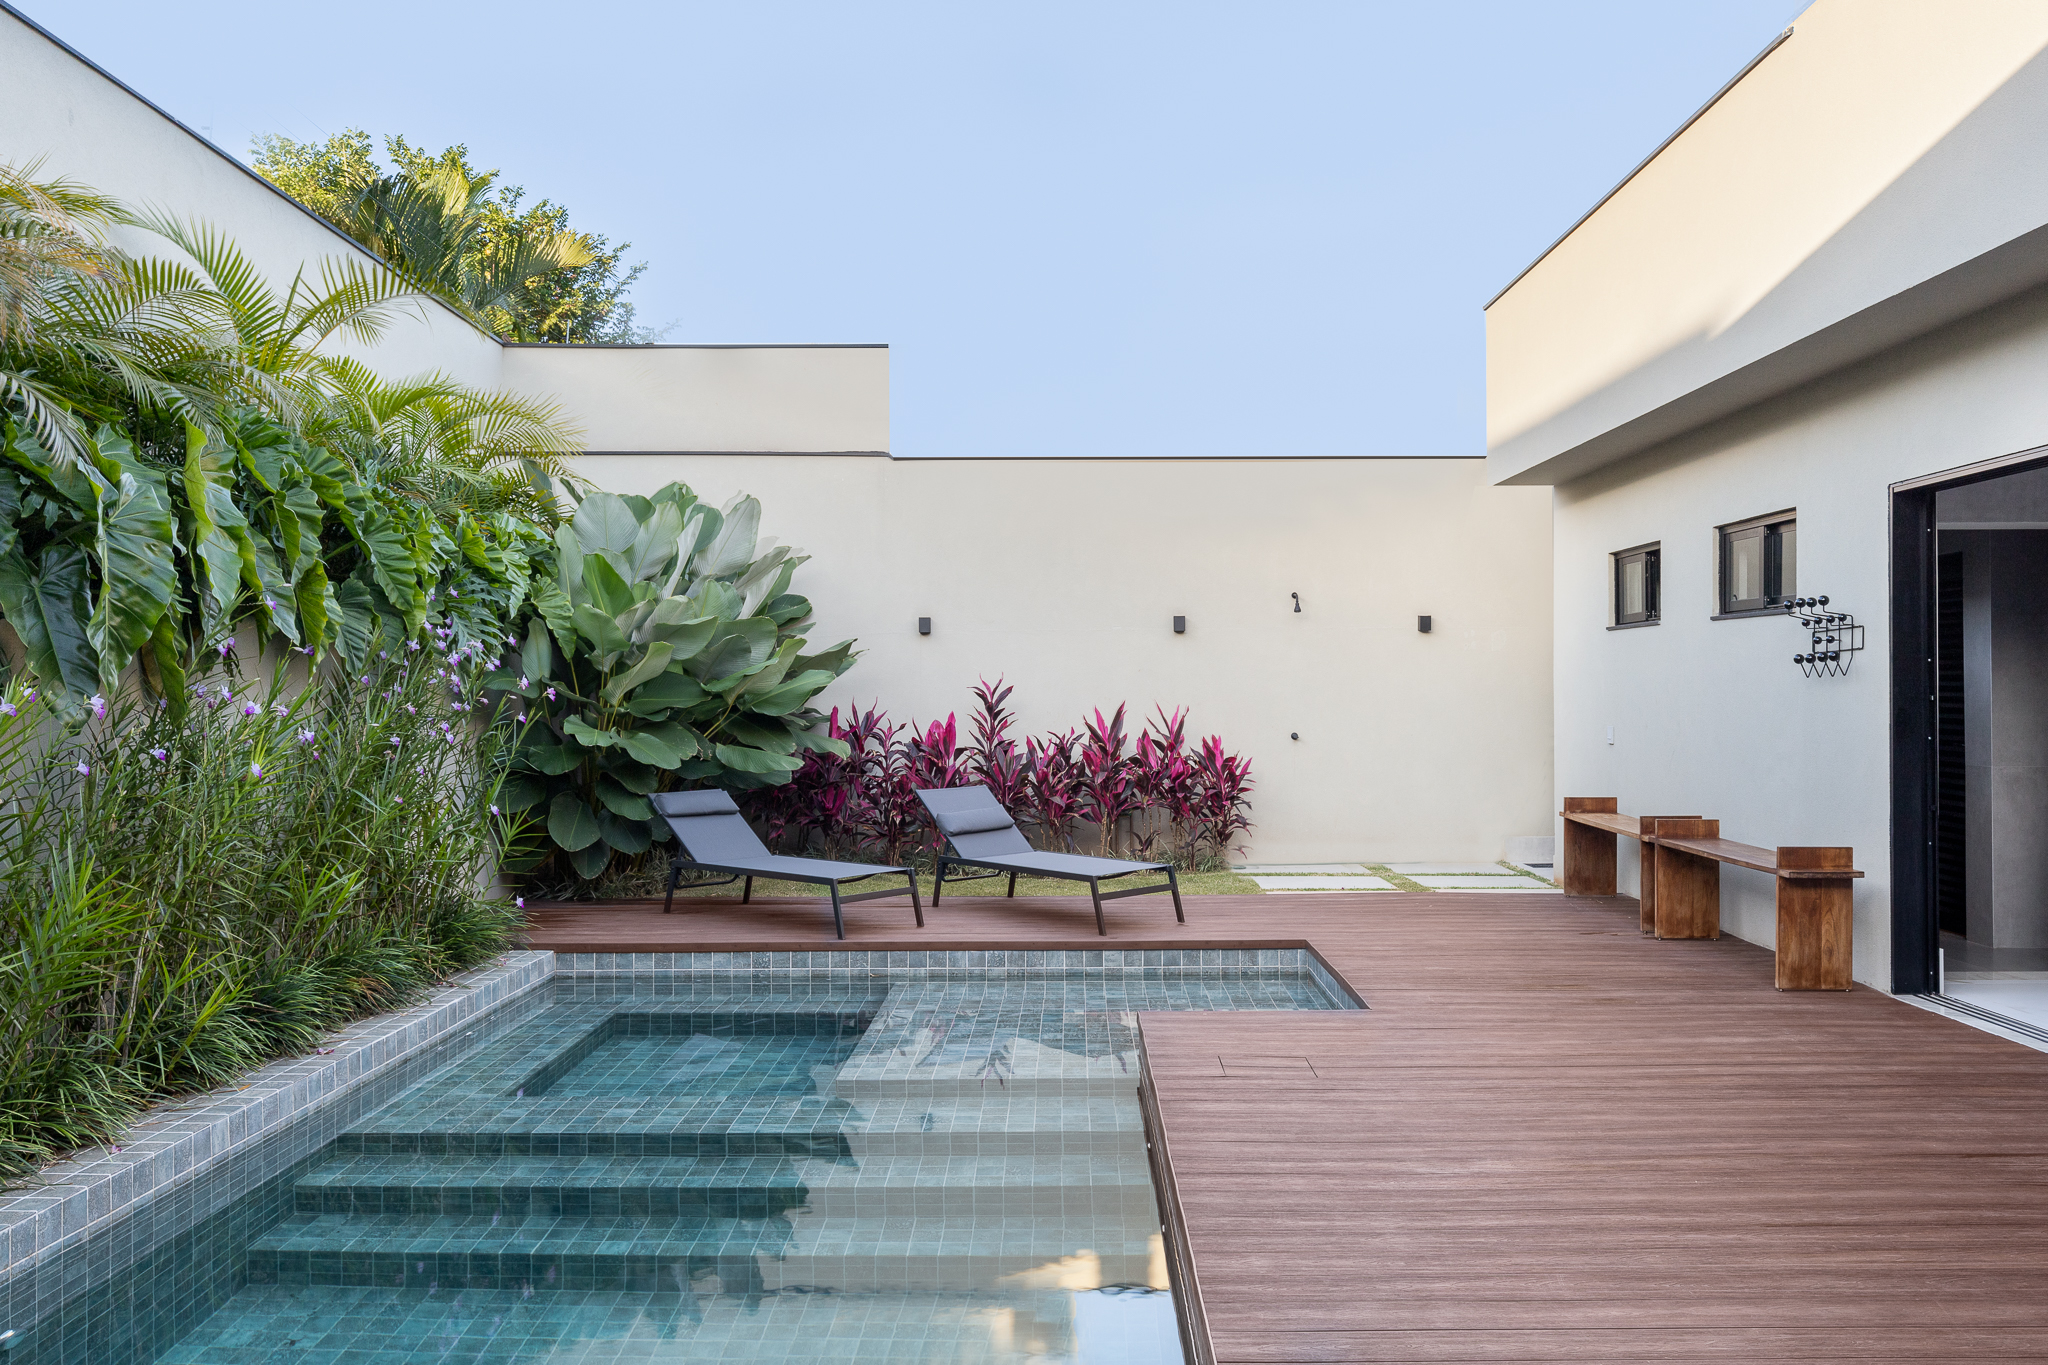 Casa com arquitetura clean foi pensada para as festas da família. Projeto de Visivo Arquitetura. Na foto, piscina com deque de madeira e plantas.